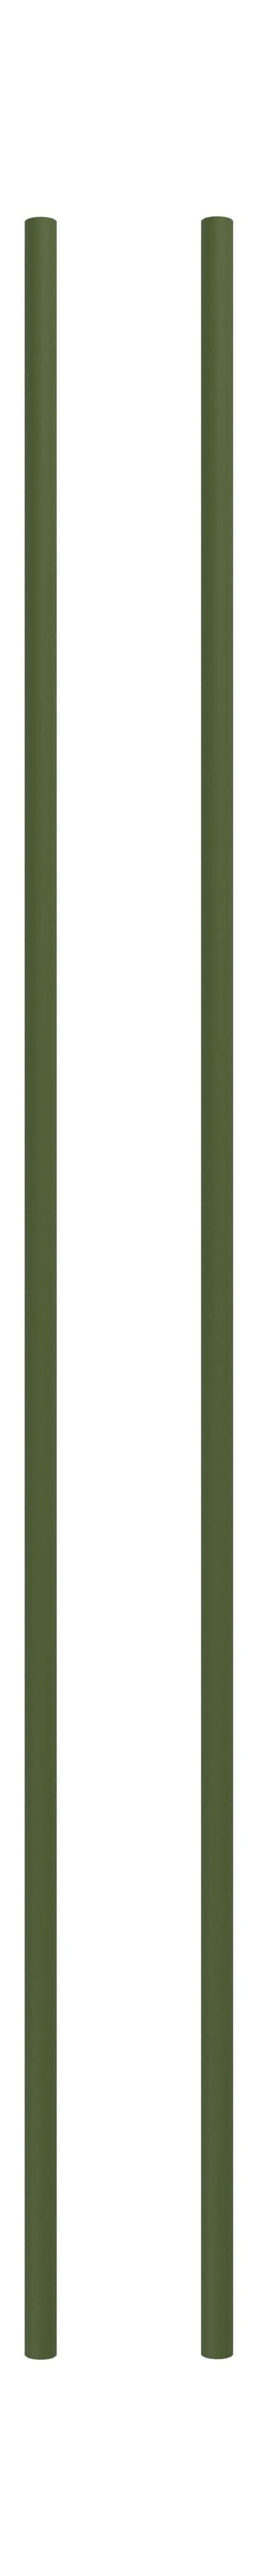 Sistema de estantería Moebe/Pierna de estantería de pared 115 cm de pino verde, conjunto de 2